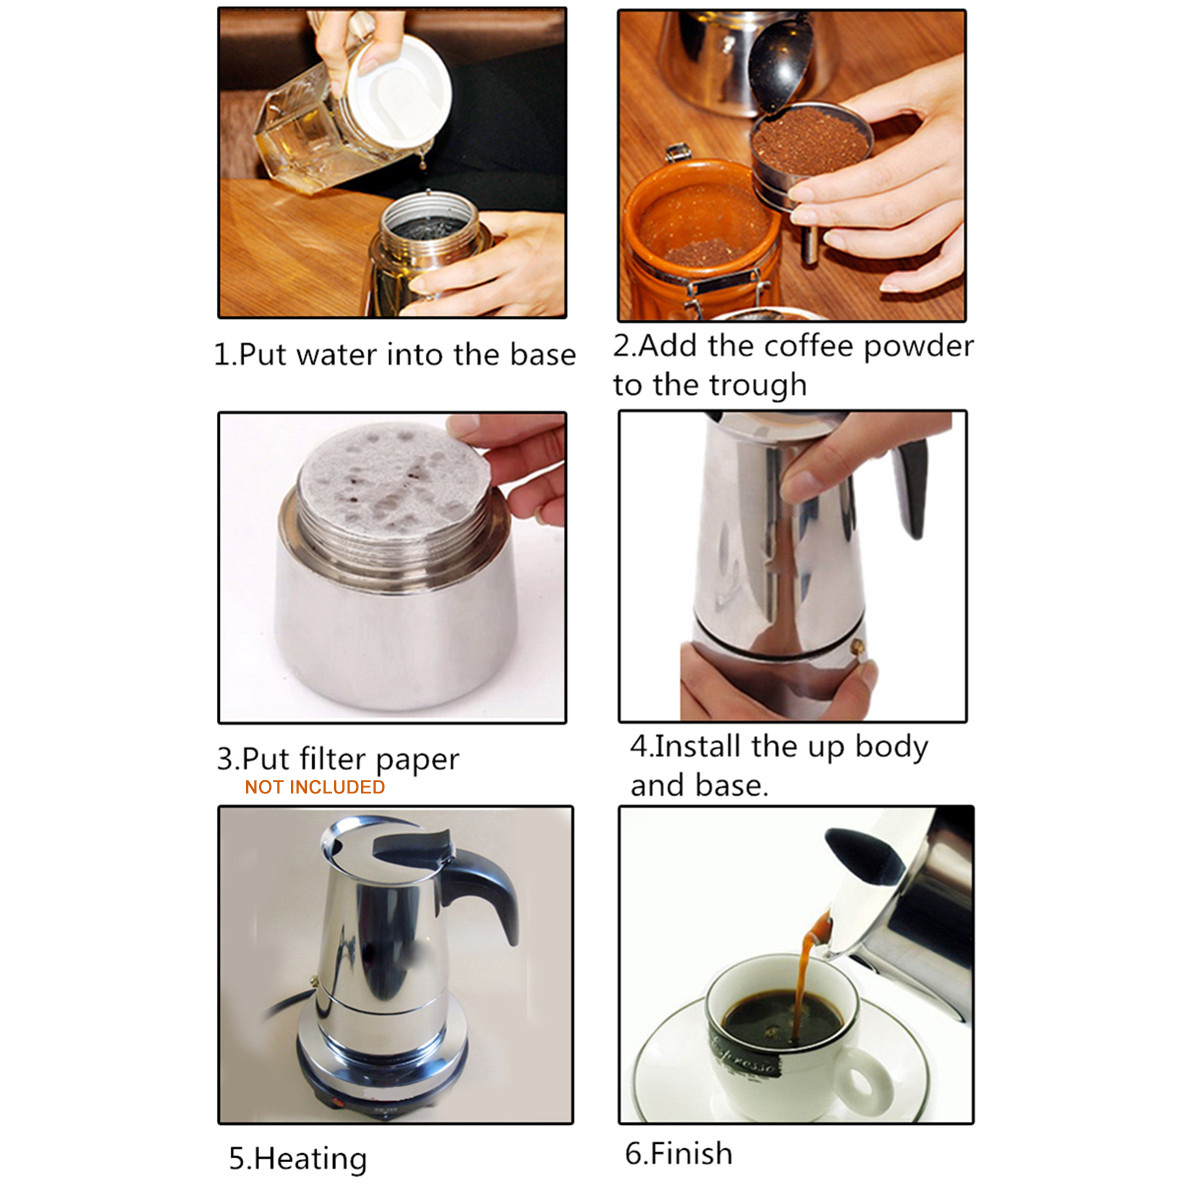 220V 500W 450ml Portable Coffee Espresso Pot Maker & Electric Stove Home Kitchen Tools 5